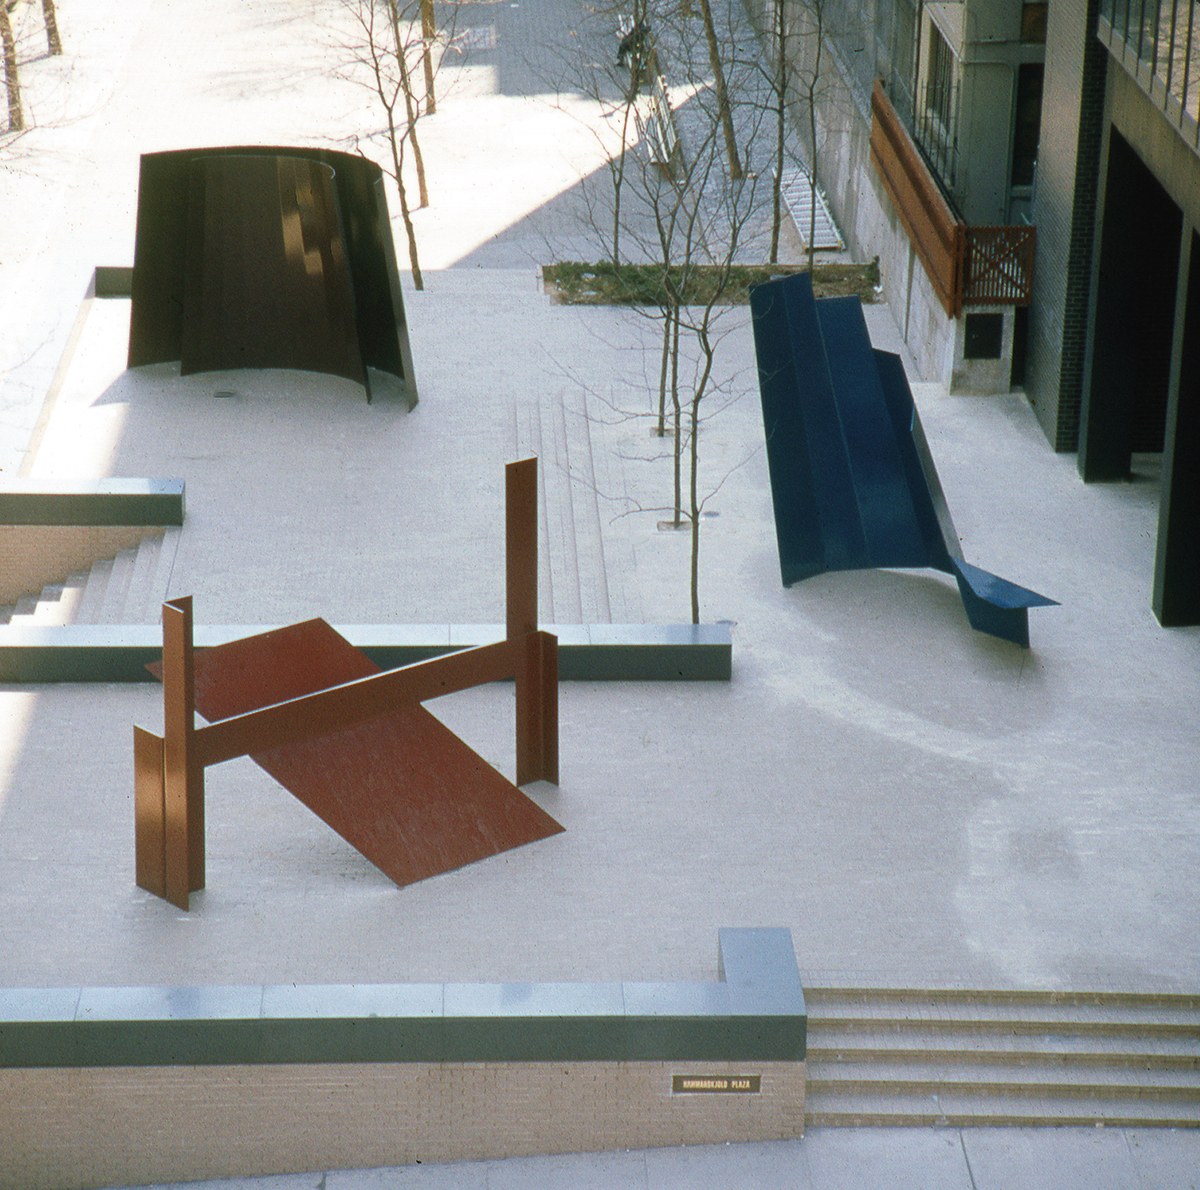 Photo of Robert Murray sculptures in Hammarskjold Plaza